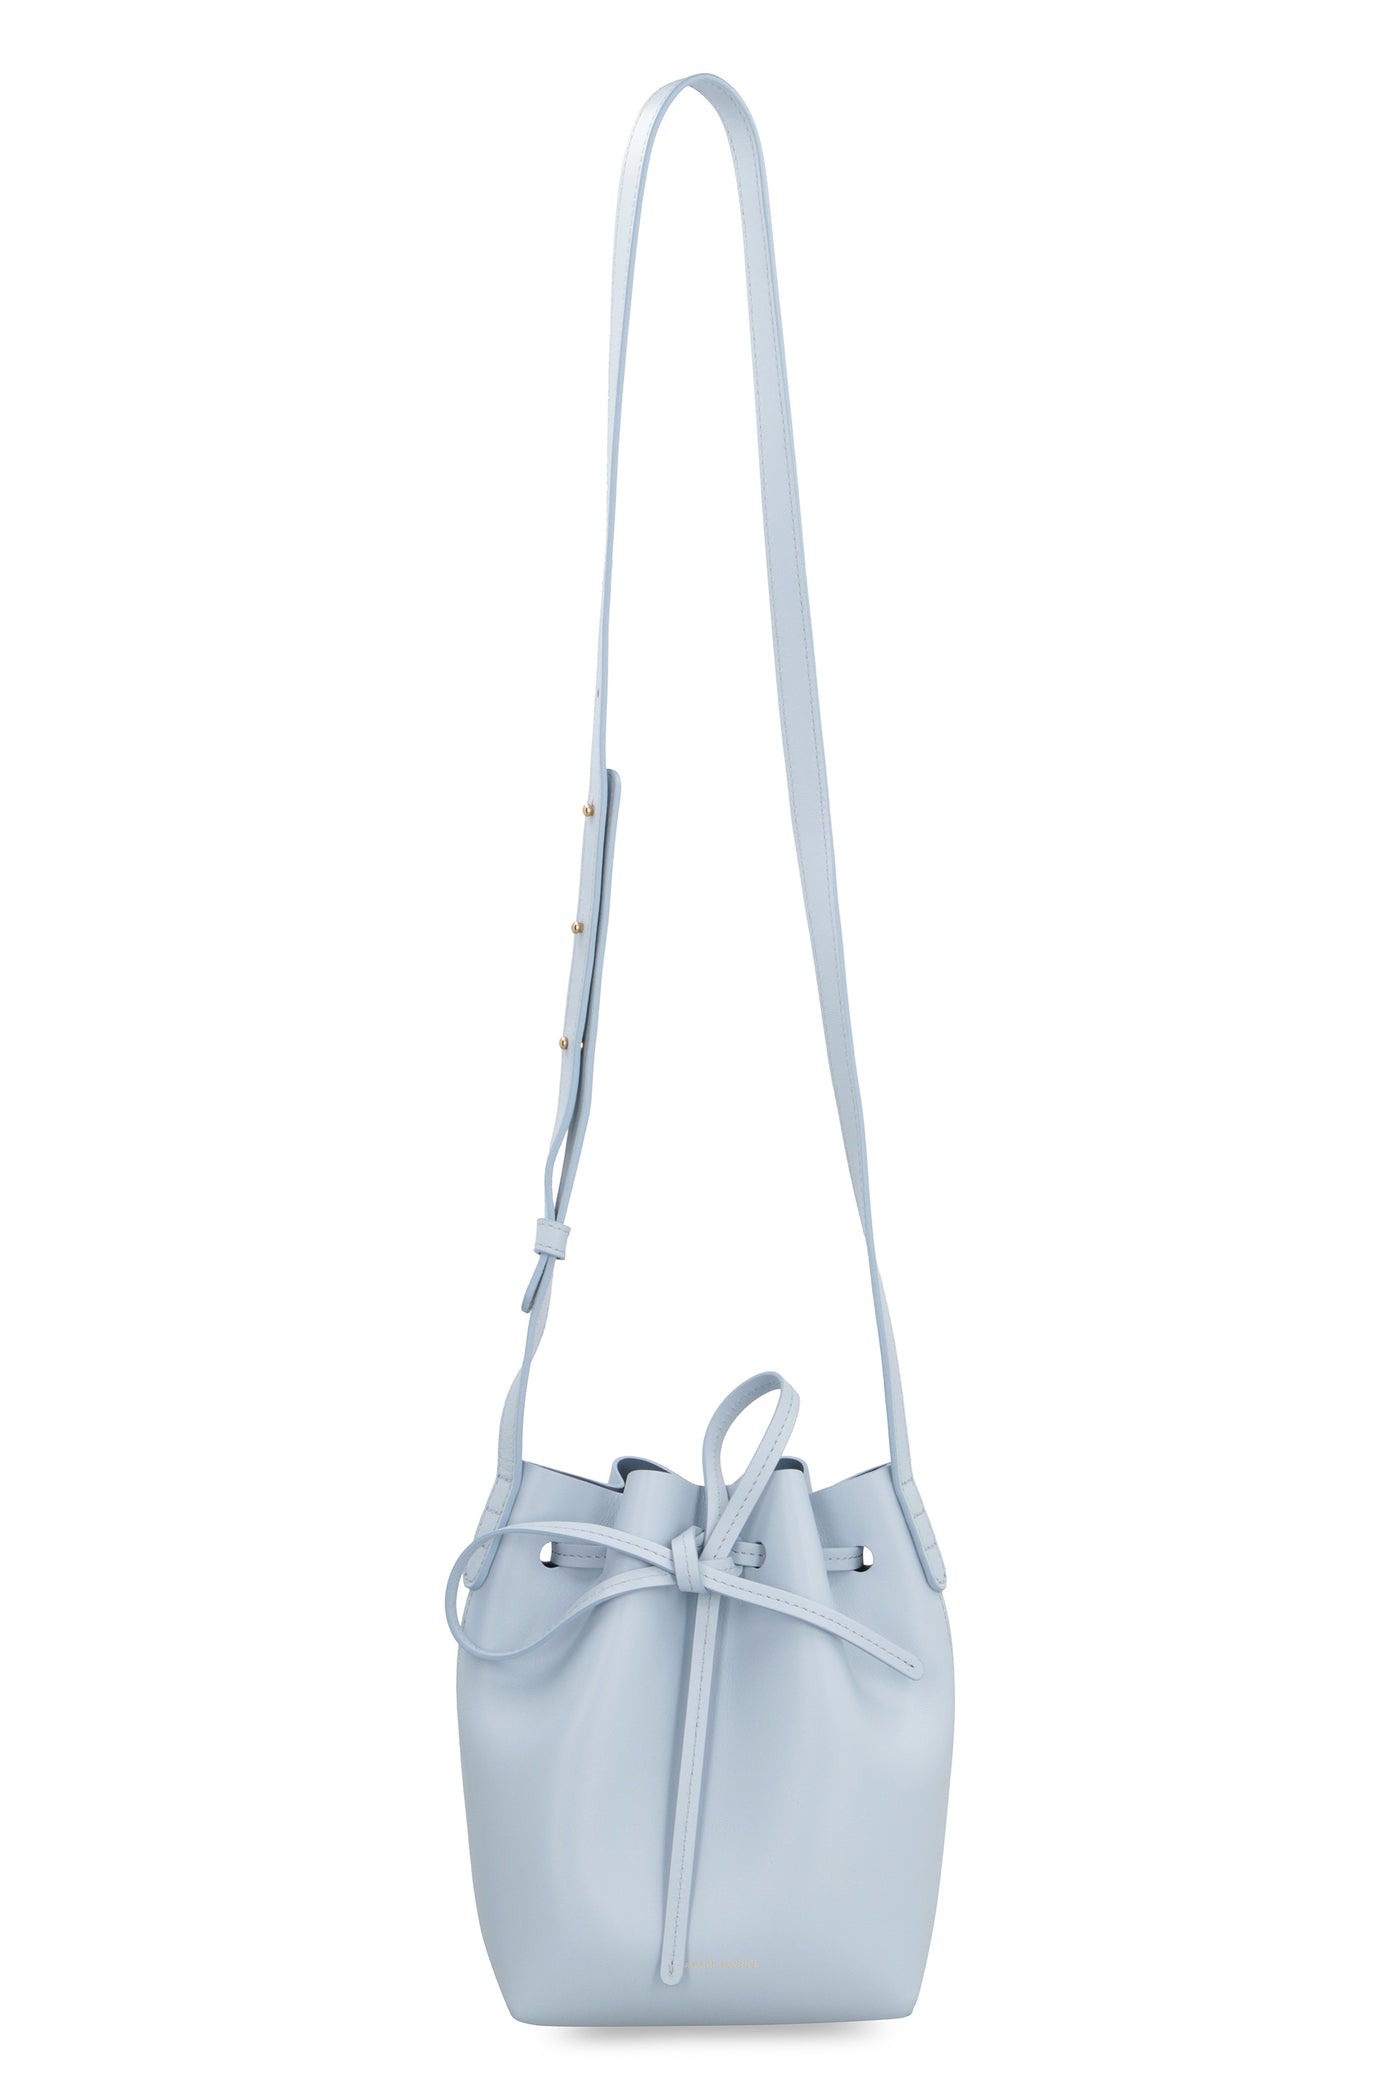 Mansur Gavriel Leather Crossbody Bag - Neutrals Crossbody Bags, Handbags -  WGY43153